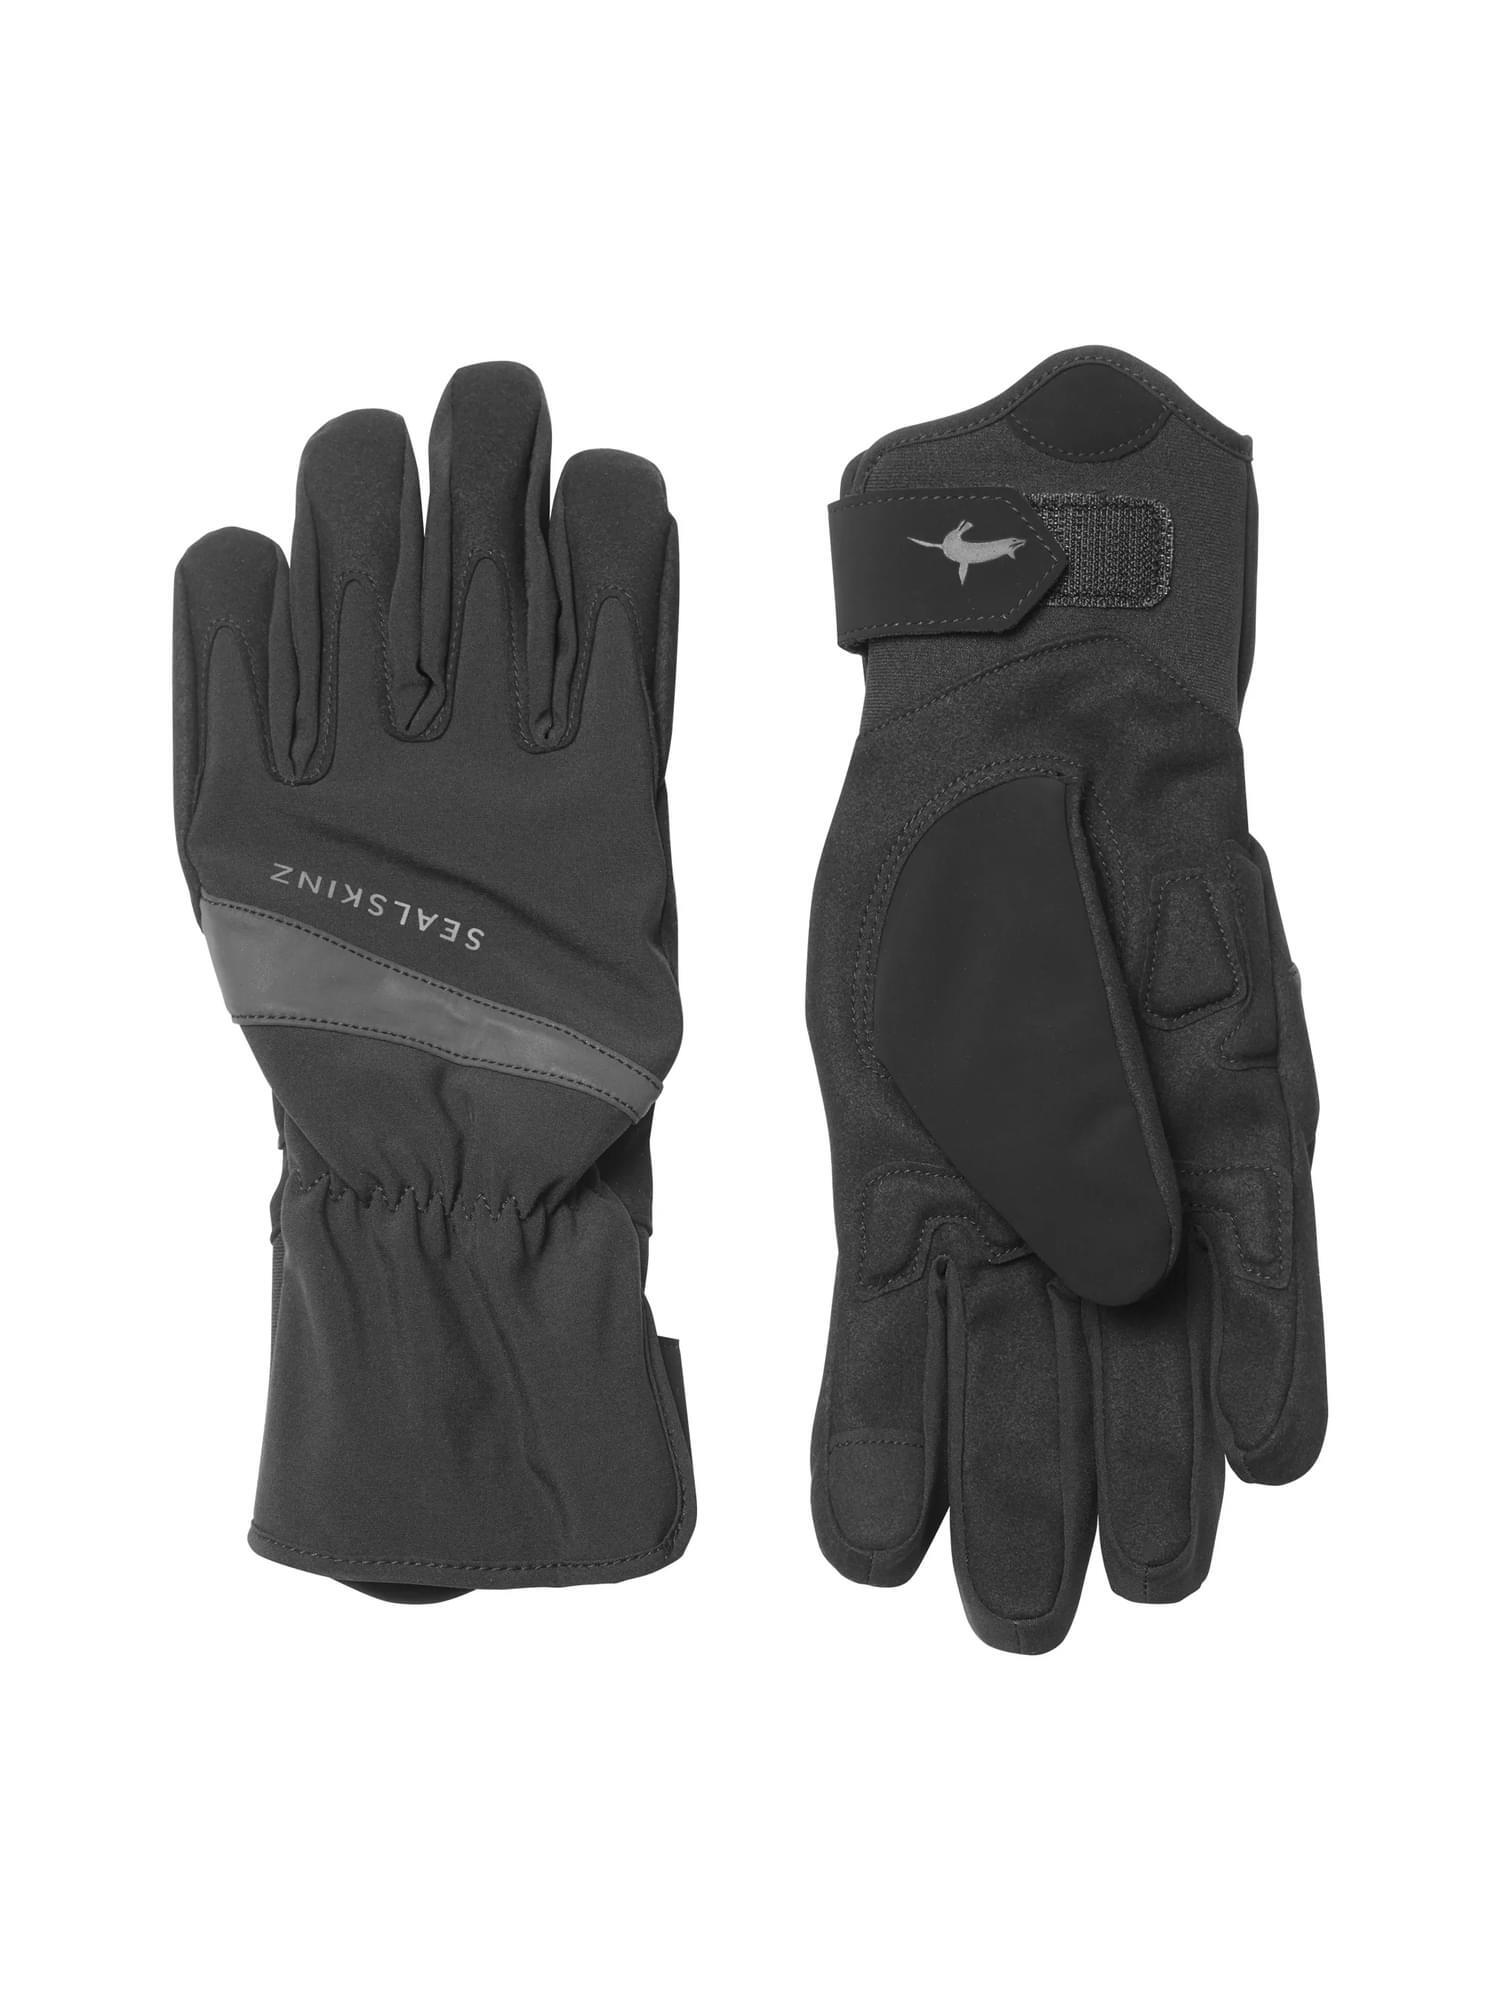 Ladies Waterproof All Weather Cycle Gloves 1/3